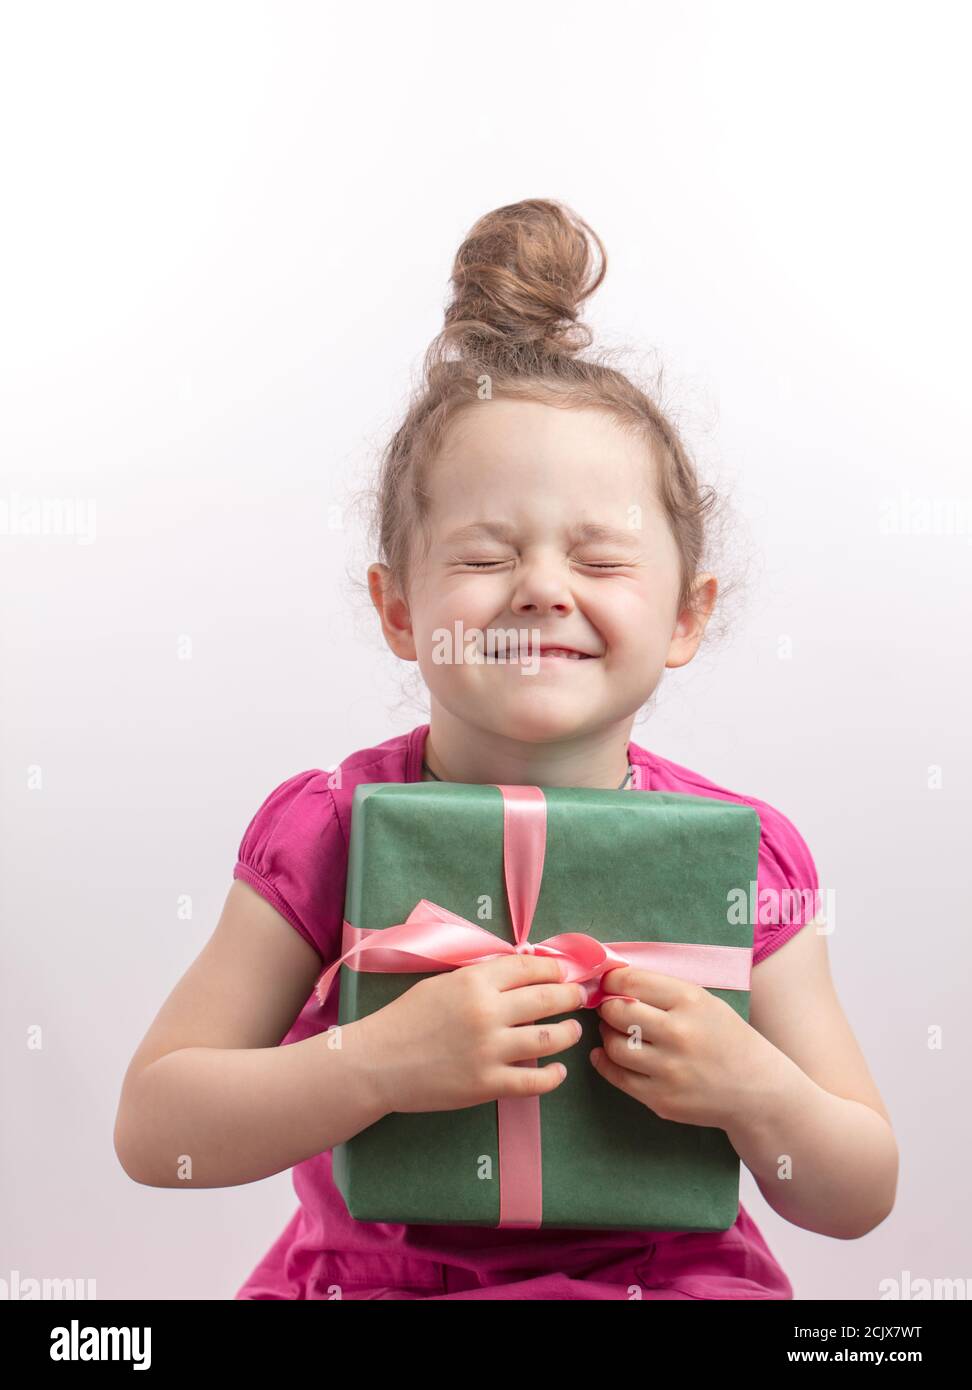 Ginger Kind mit geschlossenen Augen ist glücklich, ein Geschenk an ihrem  Geburtstag zu bekommen. Urlaub und Glück Konzept Stockfotografie - Alamy